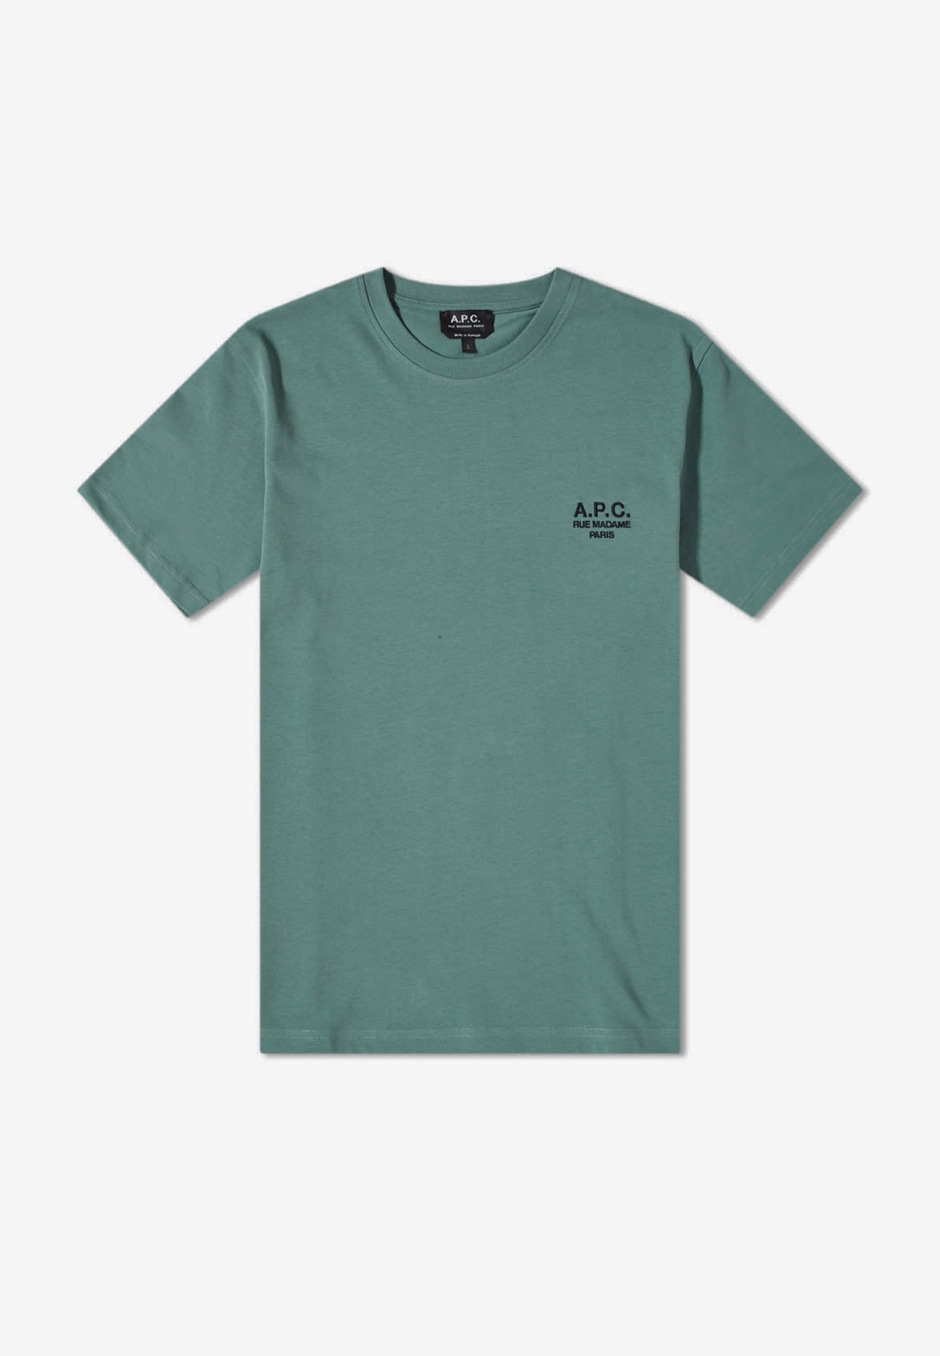 A.P.C. New Raymond T-Shirt